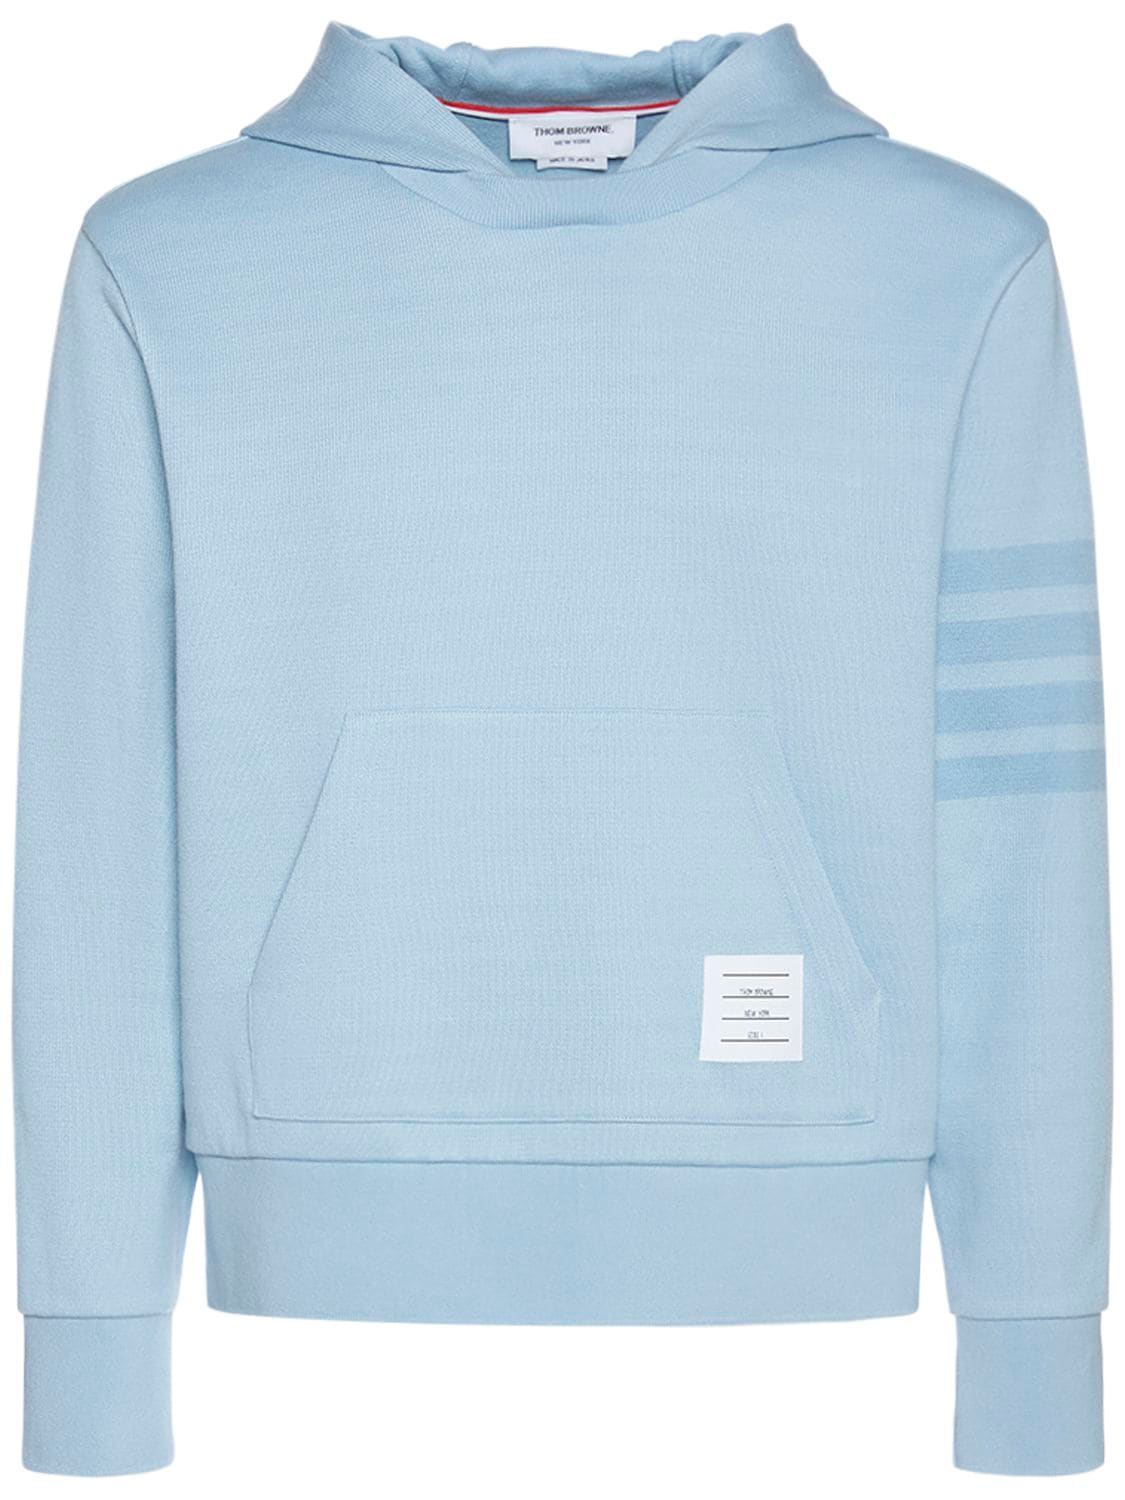 Image of Cotton Hooded Sweatshirt